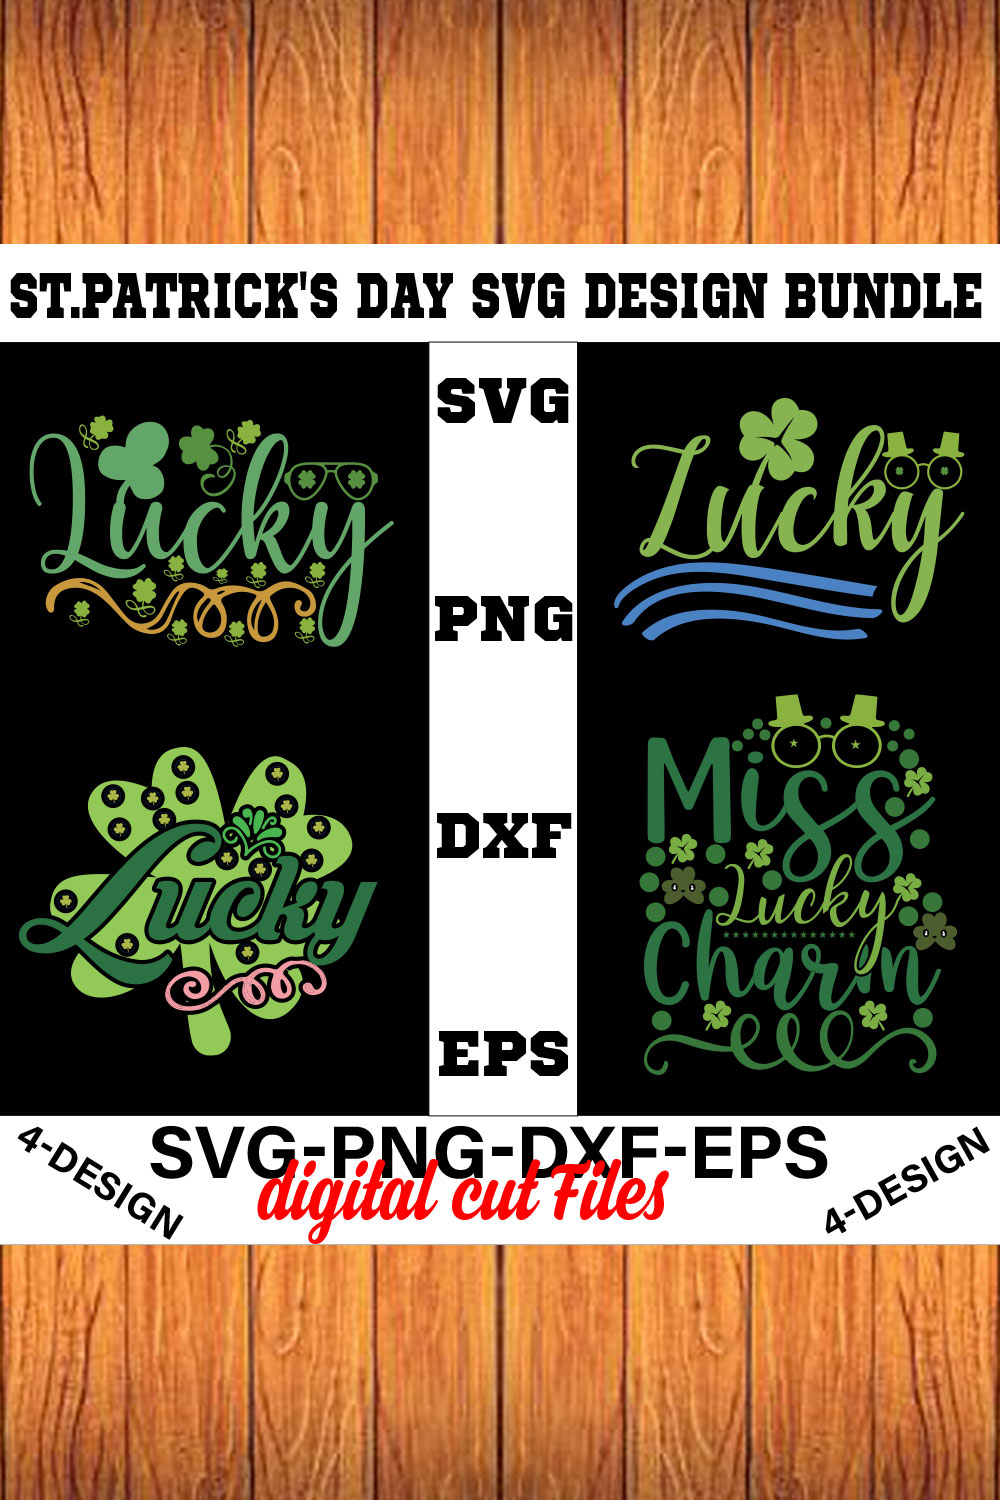 Stpatrick's Day Svg Design Bundle Vol-04 pinterest preview image.